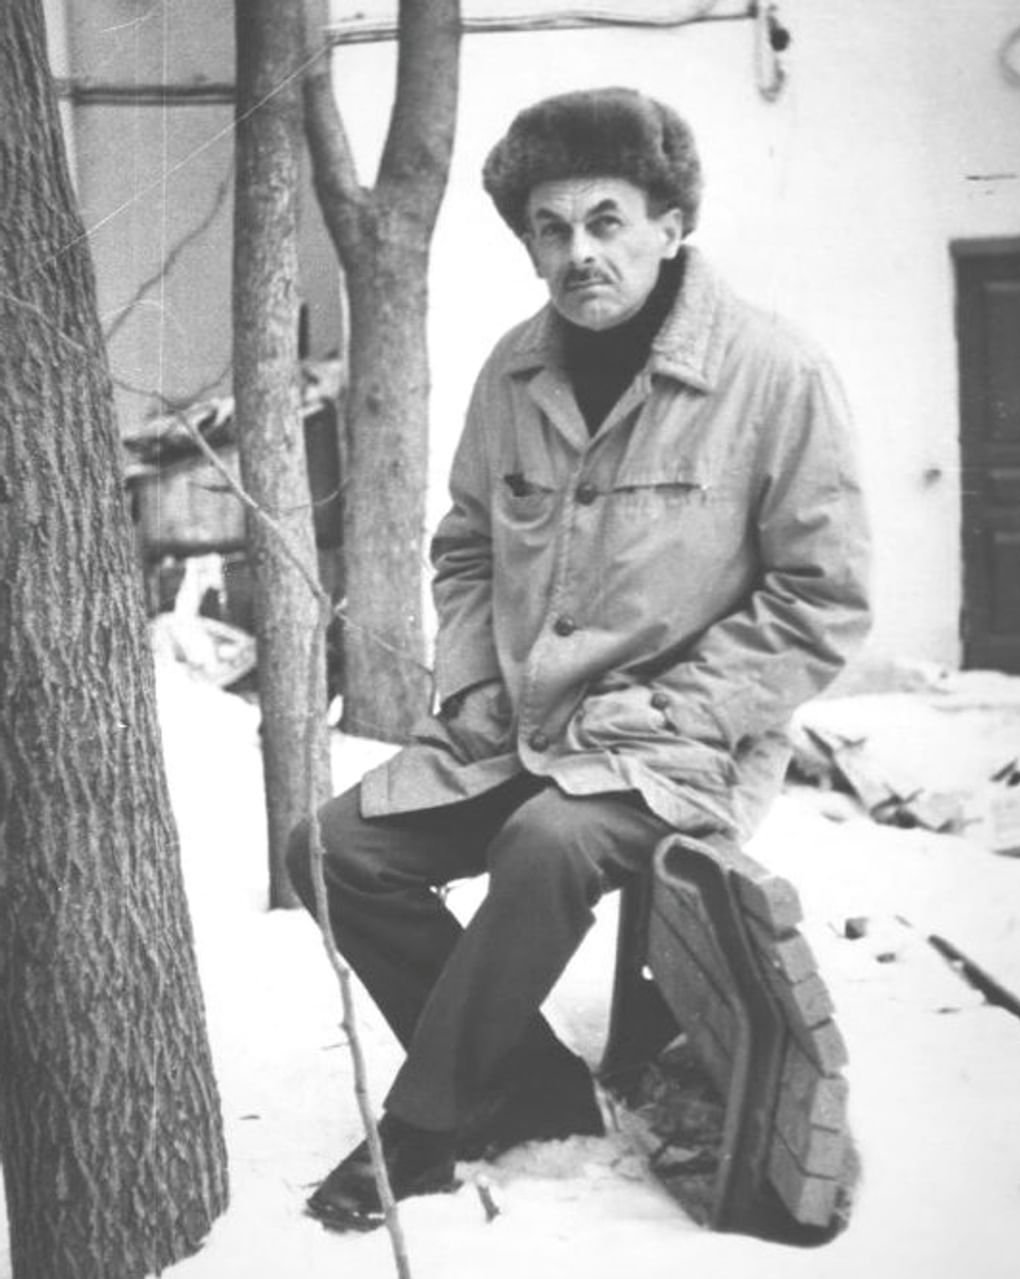 Поэт Булат Окуджава во дворе своего детства. Москва, 1976 год. Фотография: Николай Лаврентьев / Мультимедиа Арт Музей, Москва